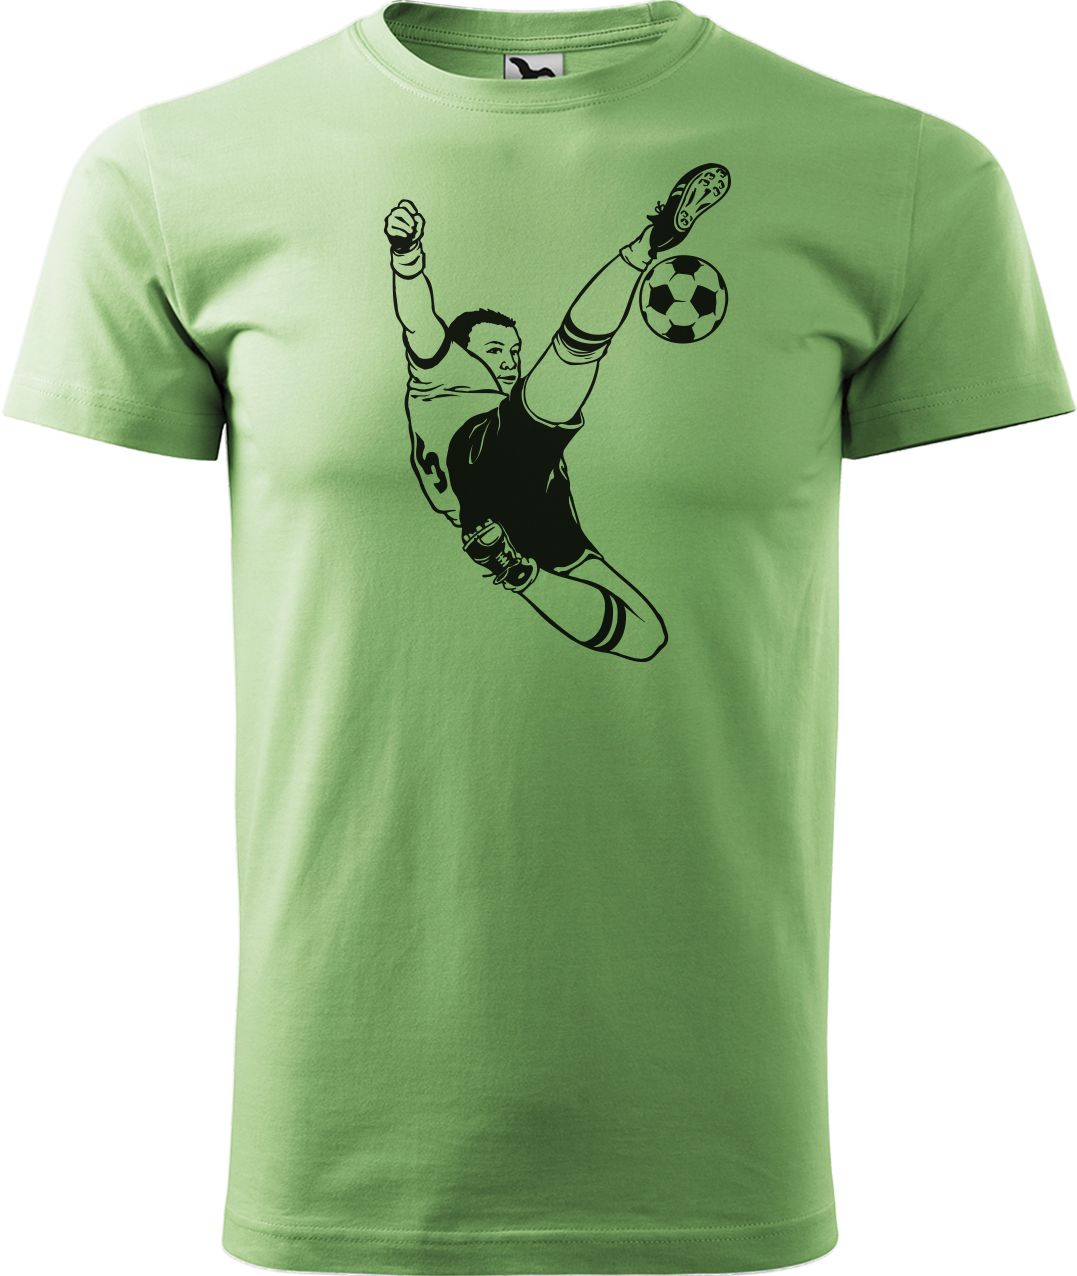 Tričko pro fotbalistu - Fotbalista s míčem Velikost: XL, Barva: Trávově zelená (39)